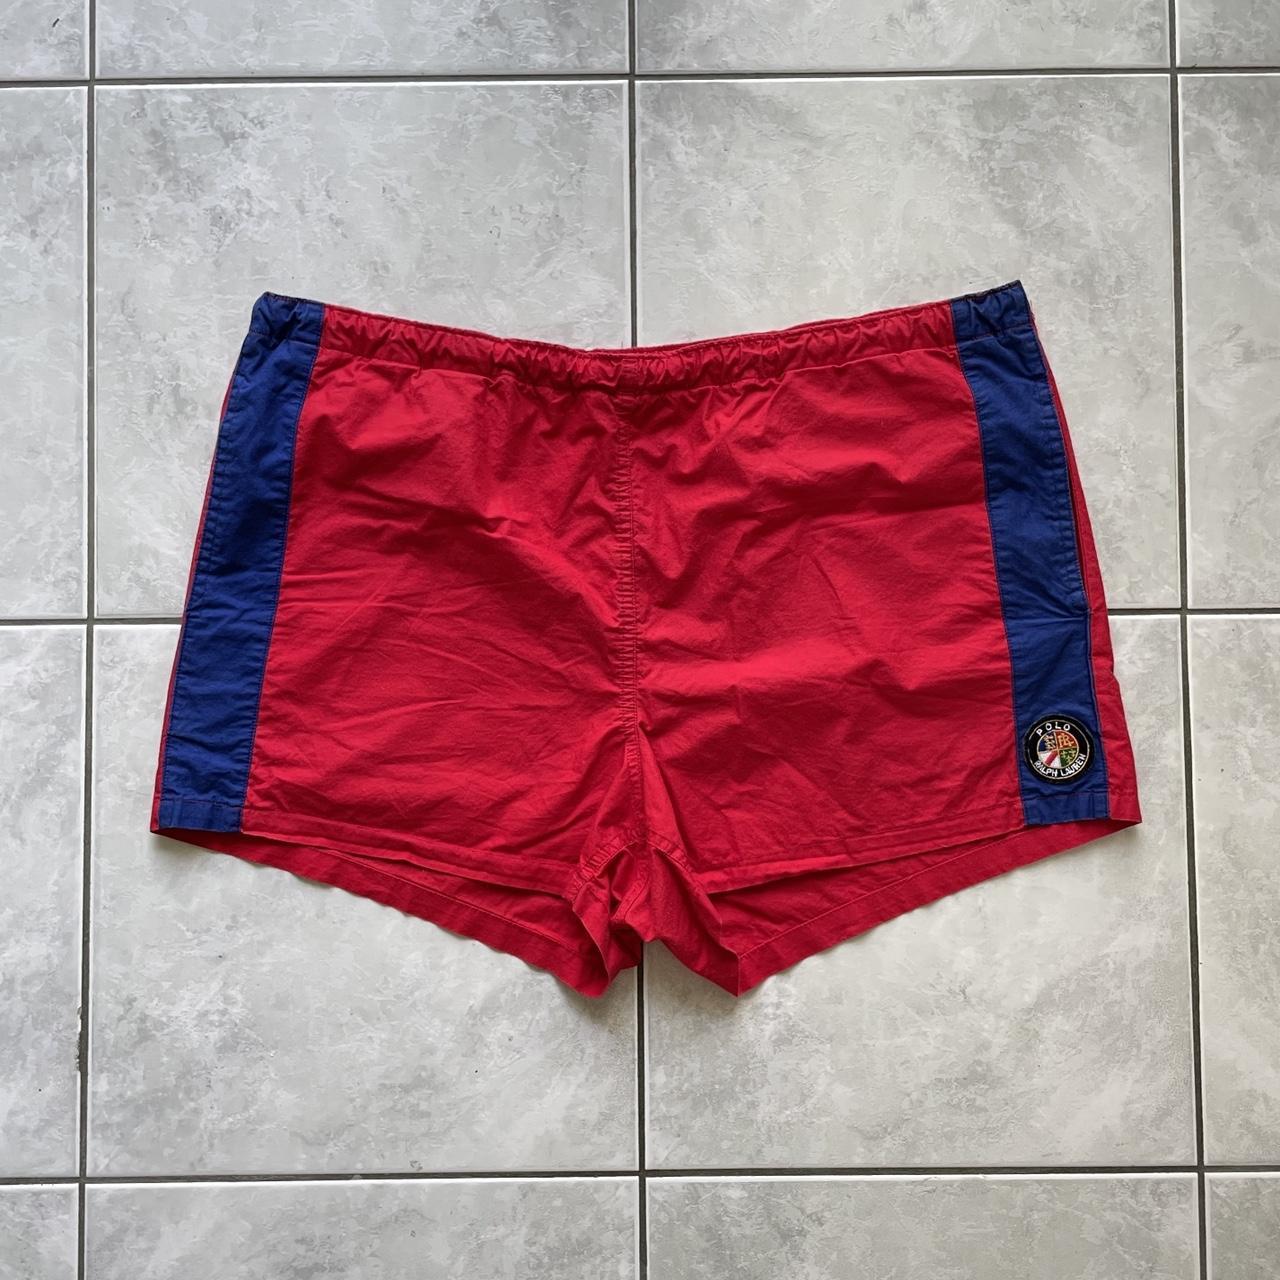 Vintage polo Ralph Lauren cookie shorts - L ( fits... - Depop